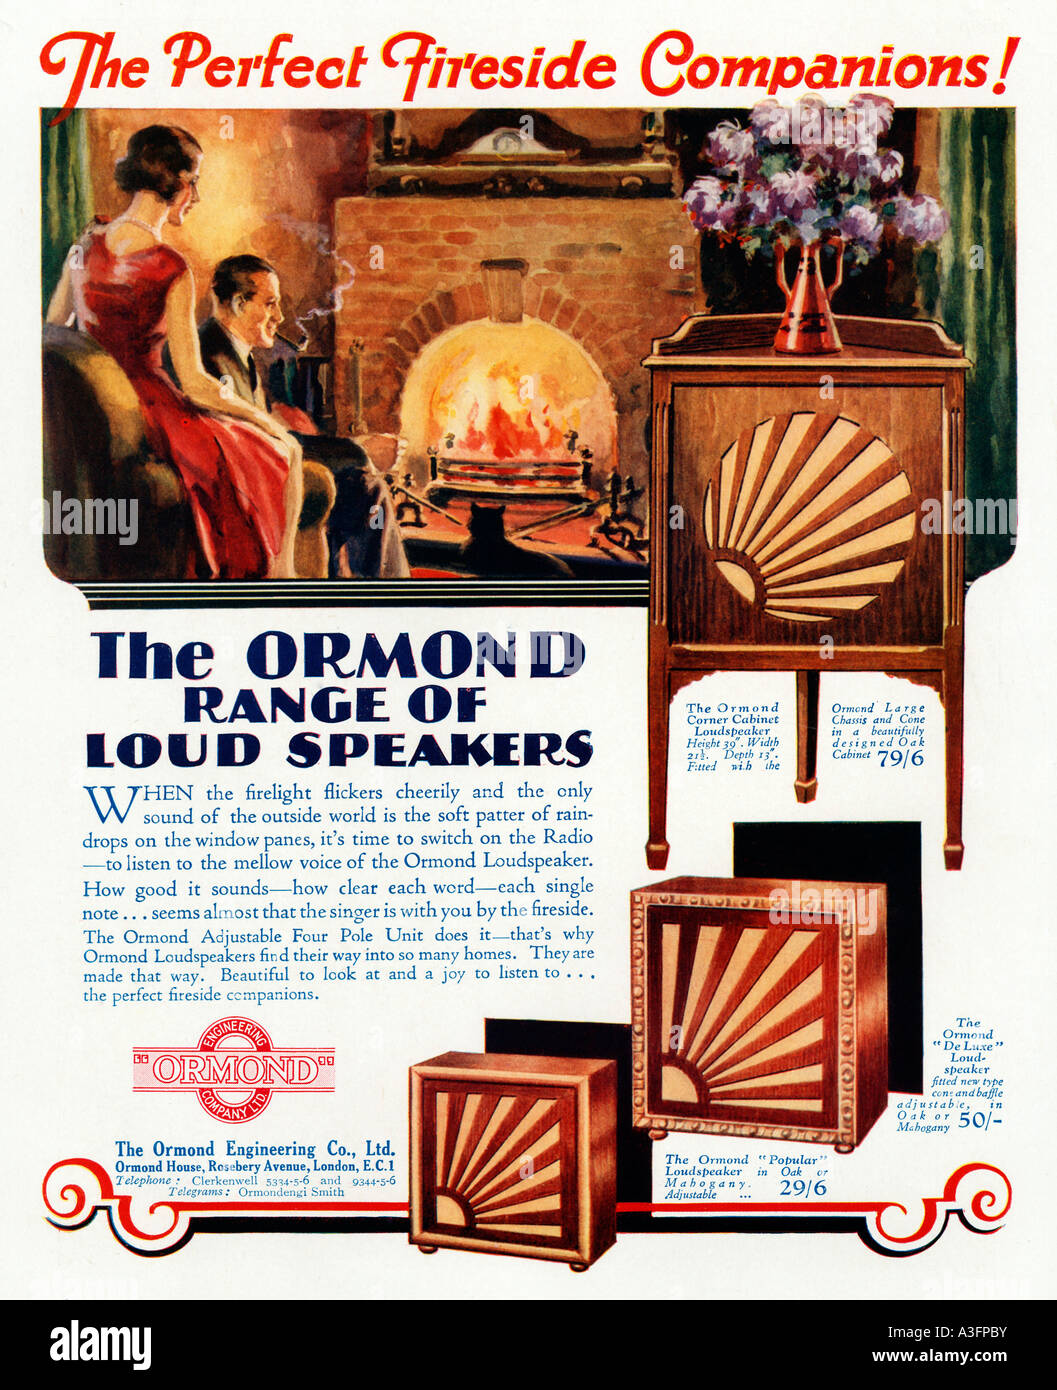 Haut-parleurs Ormond 1930 publicité pour les haut-parleurs haut de gamme le parfait compagnon au coin du feu Banque D'Images